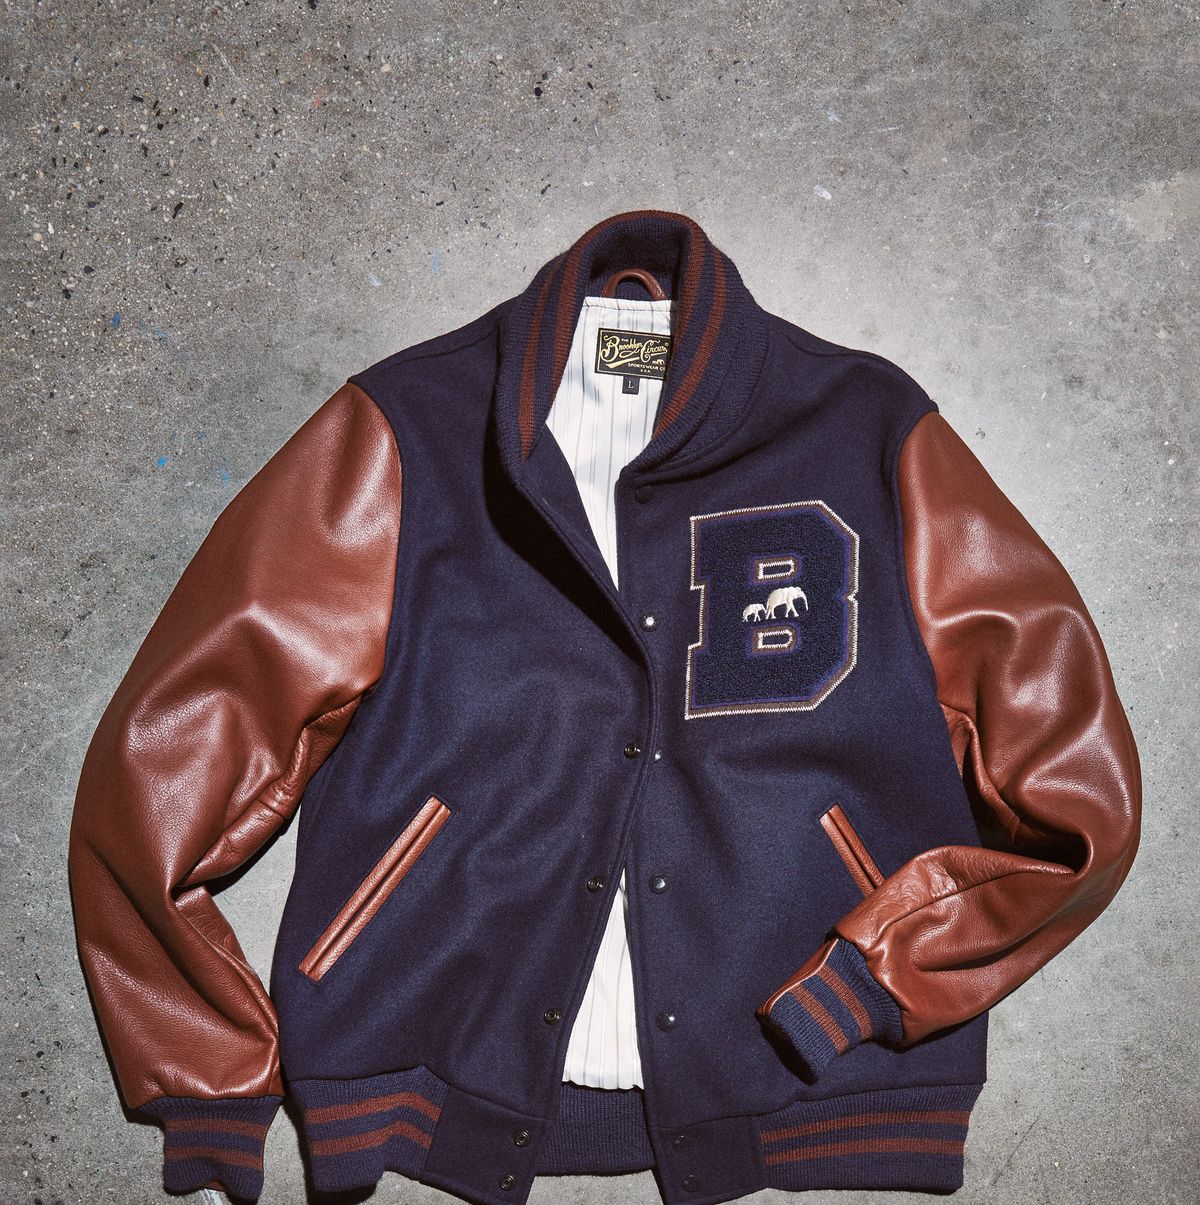 Buy Mens Brown Varsity Jacket With Black Leather Sleeves Online in